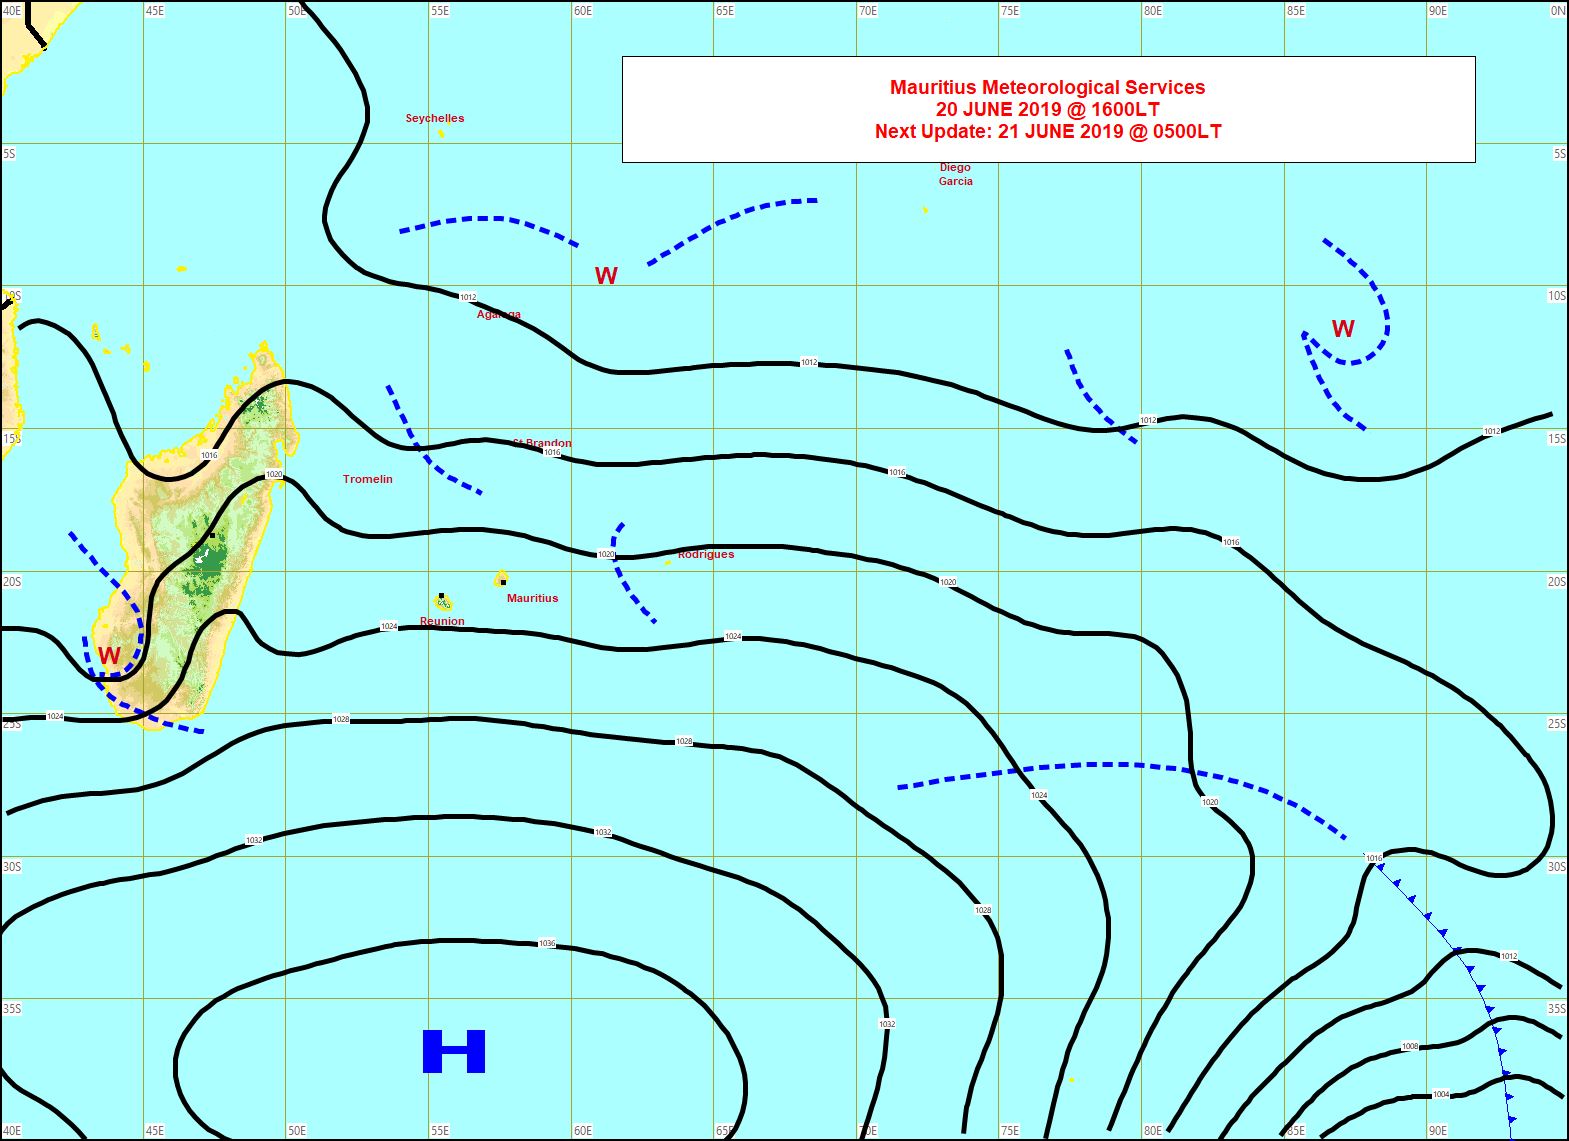 Analyse de la situation de surface cet après midi. L'anticyclone(H) est au sud des Mascareignes. L'alizé soutenu s'oriente davantage au secteur Est. MMS